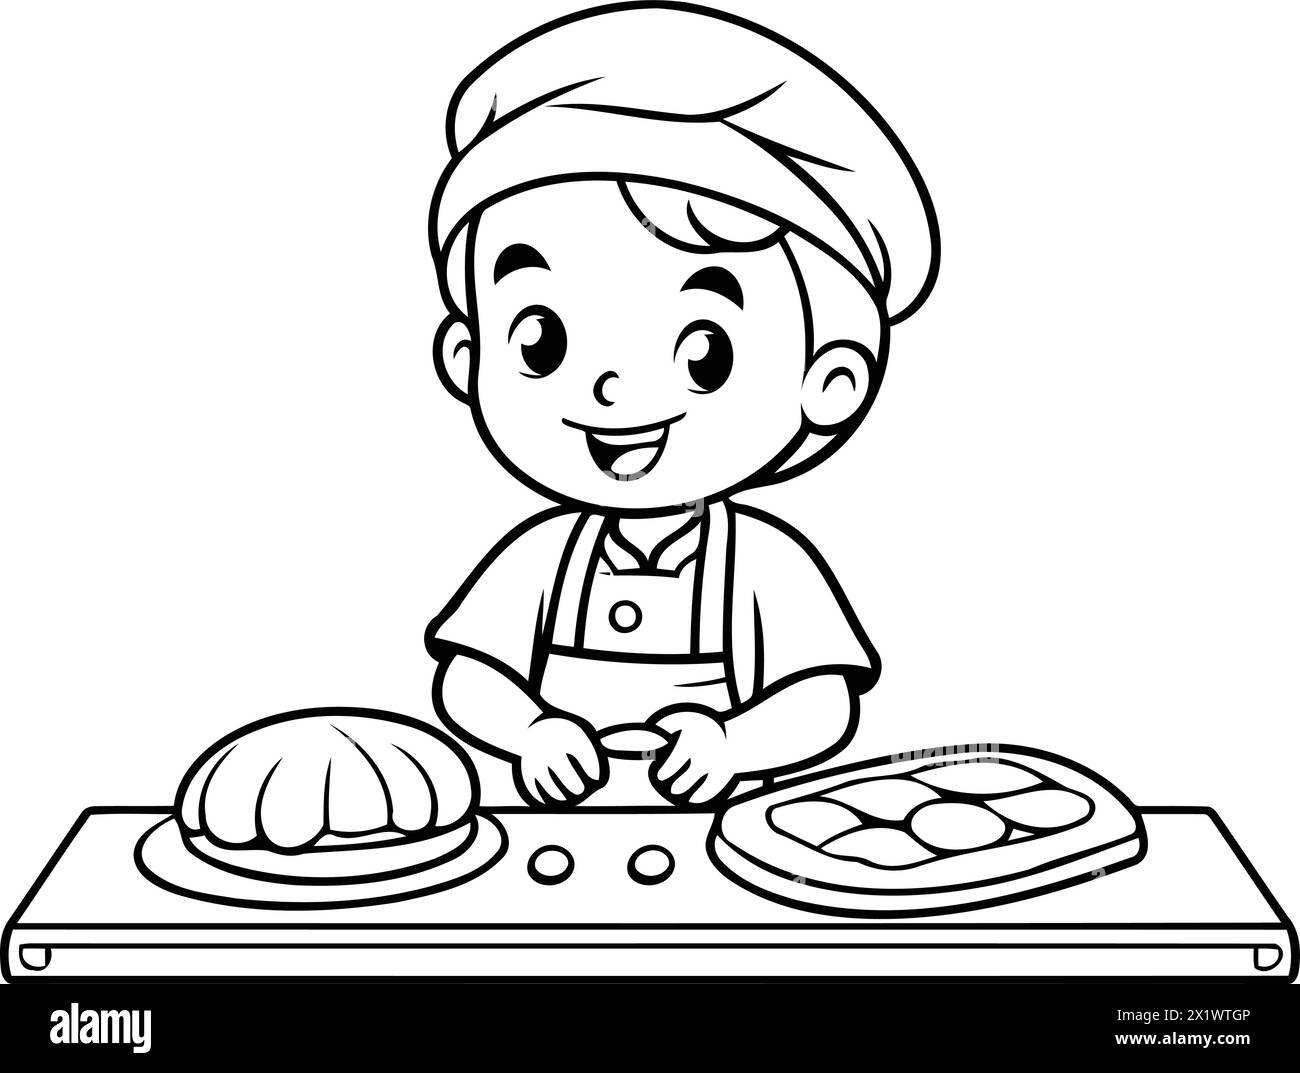 Illustrazione di un ragazzo carino che prepara una pasticceria al forno Illustrazione Vettoriale